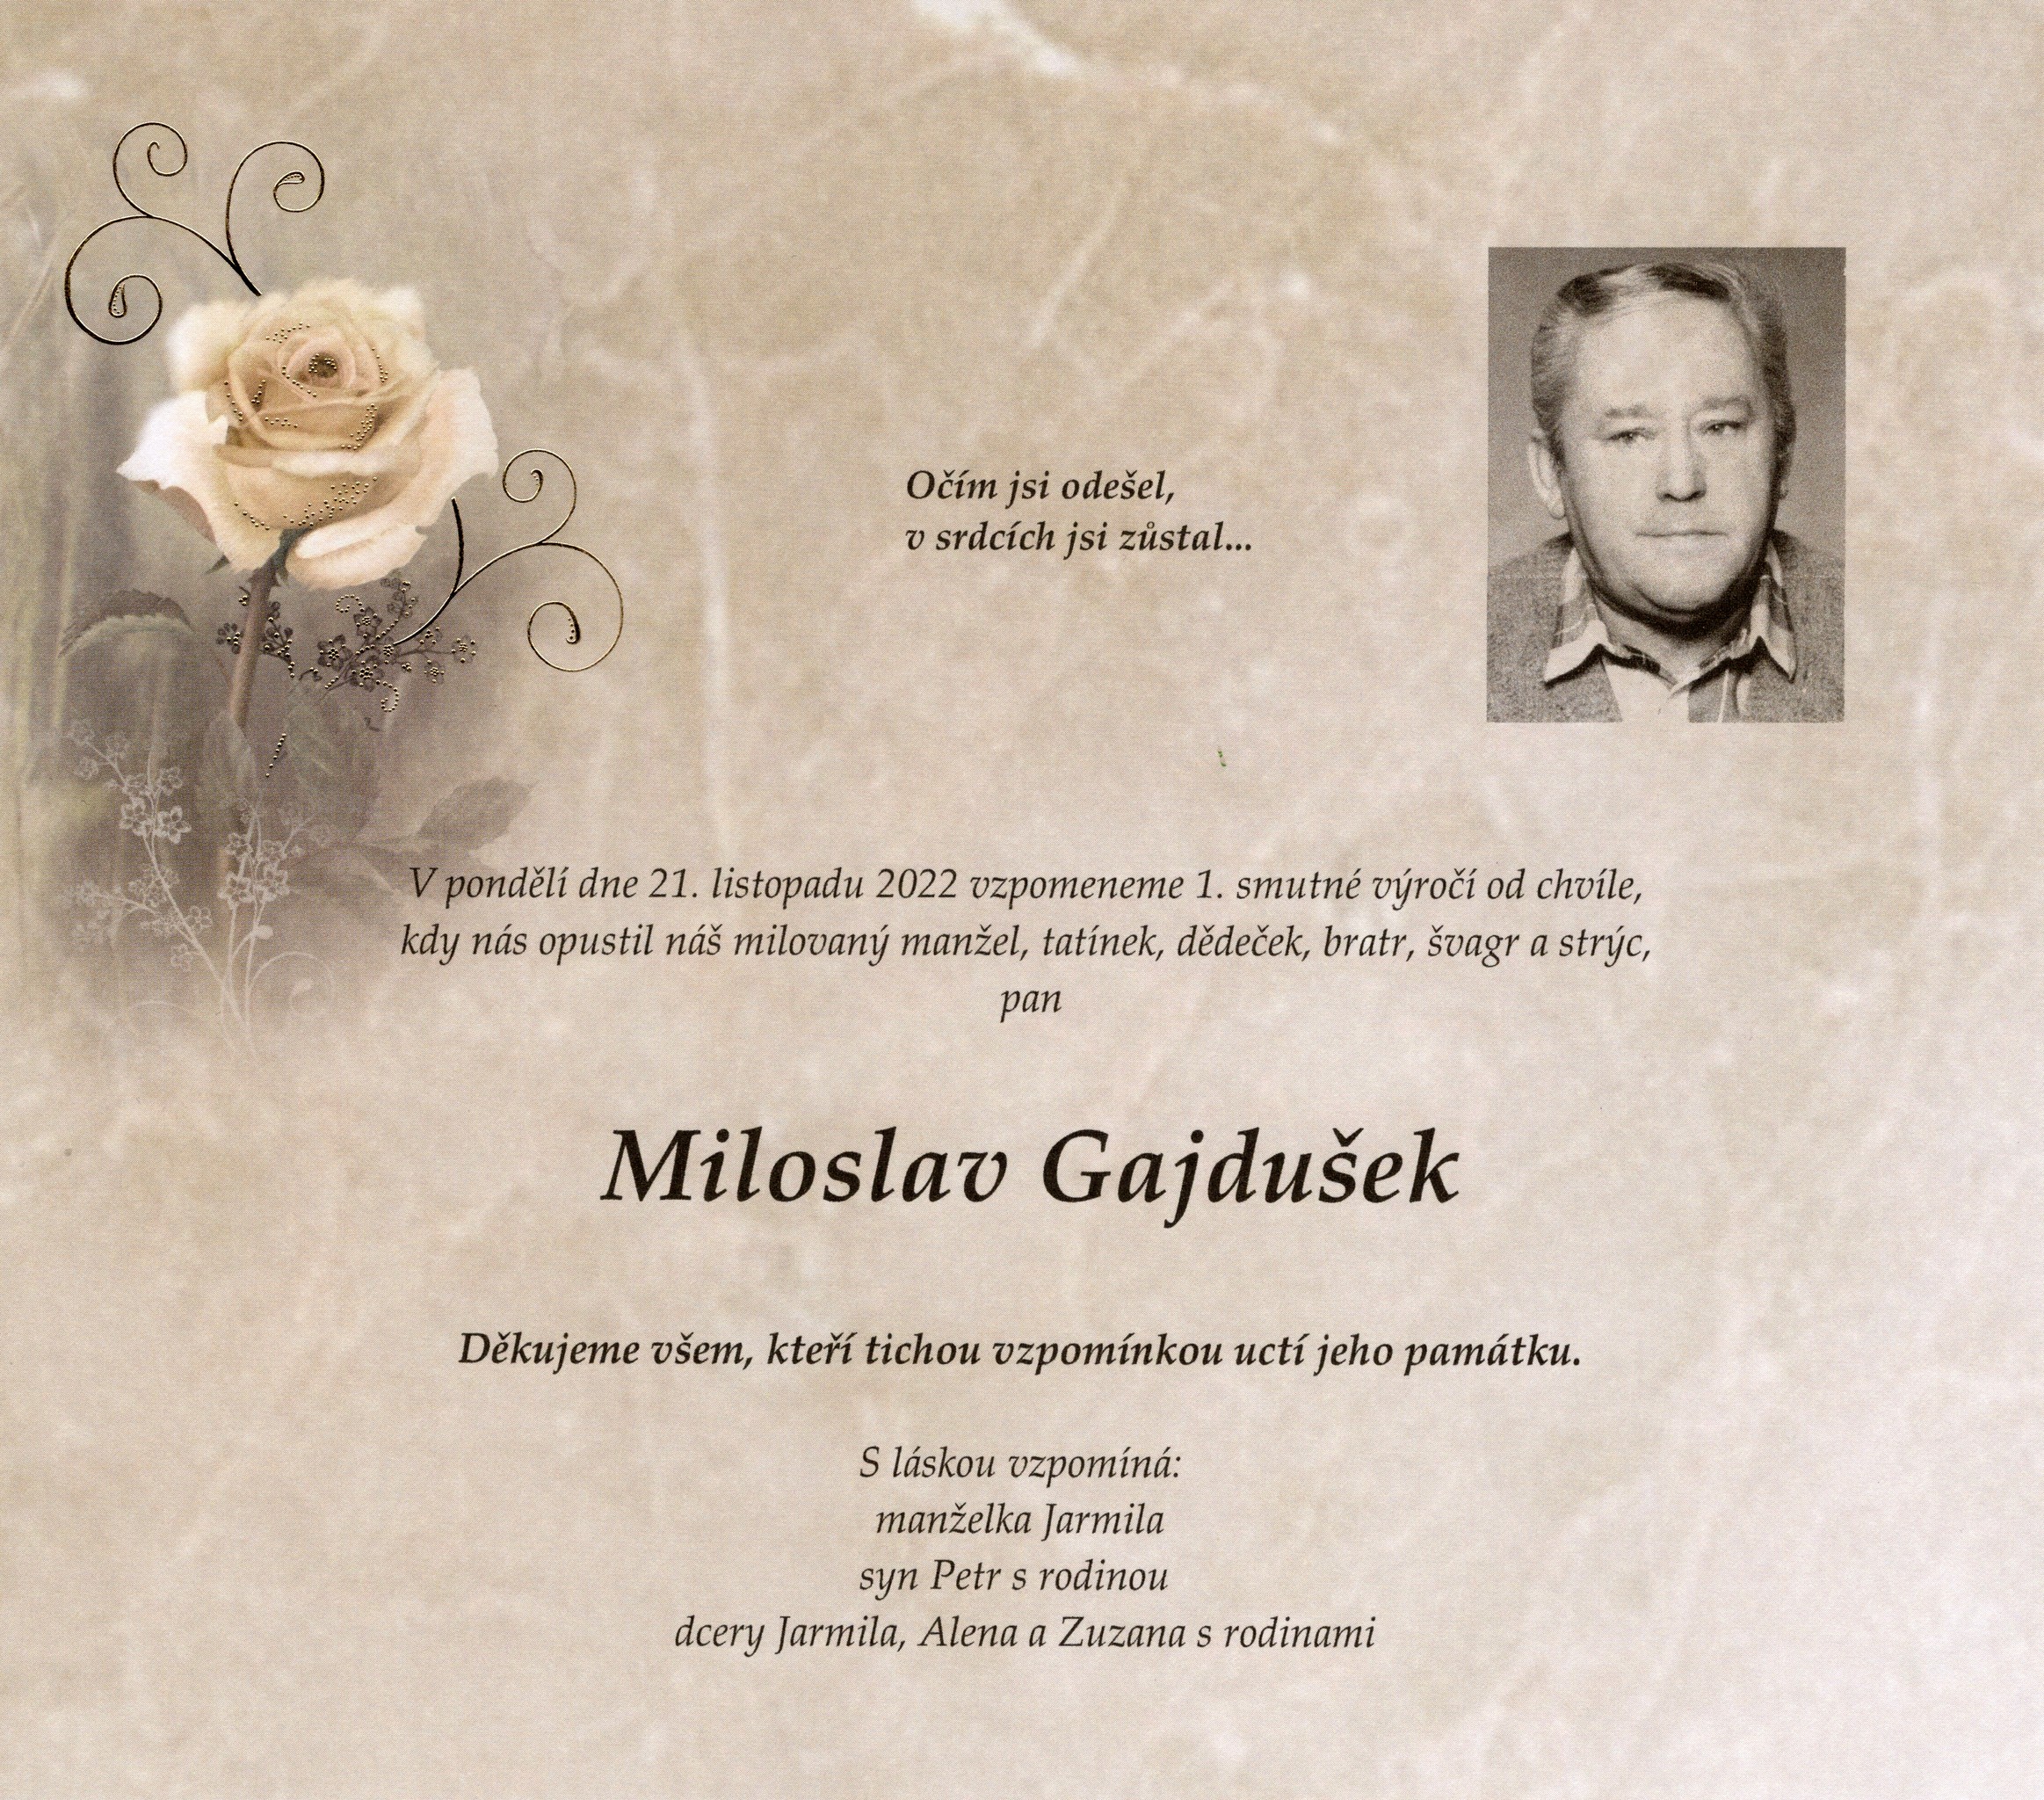 Miloslav Gajdušek